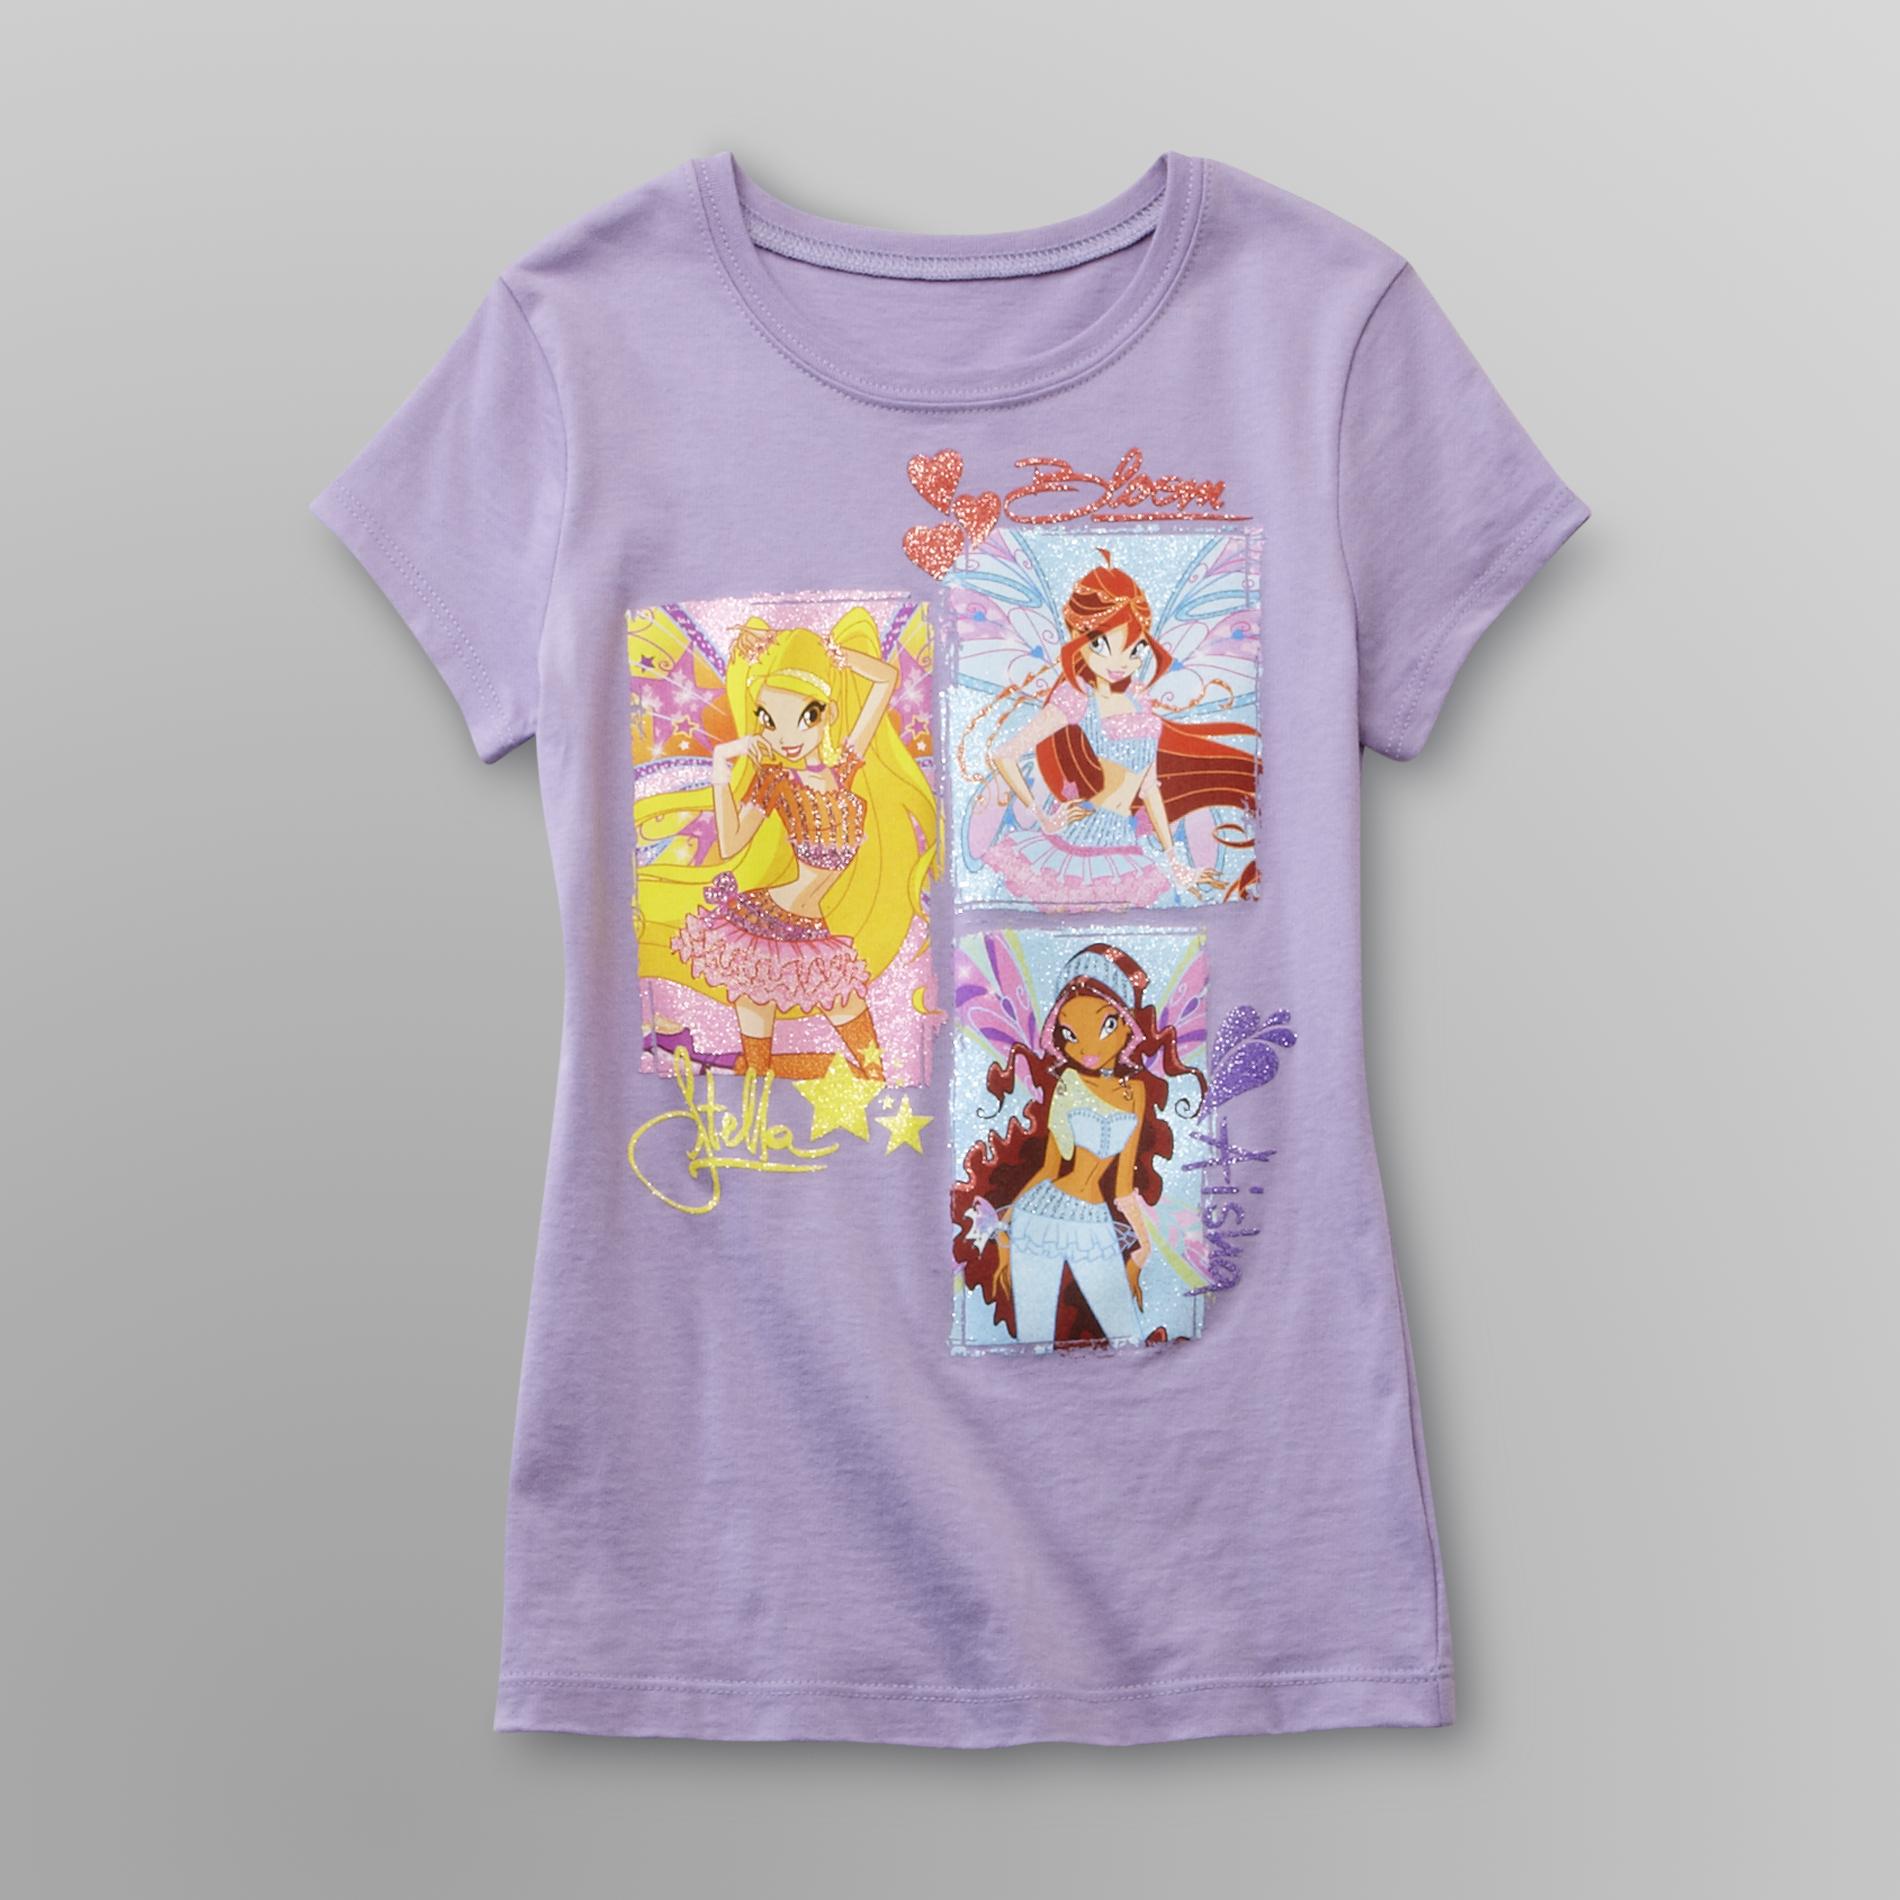 Nickelodeon Winx Club Girl's Graphic T-Shirt - Fairies